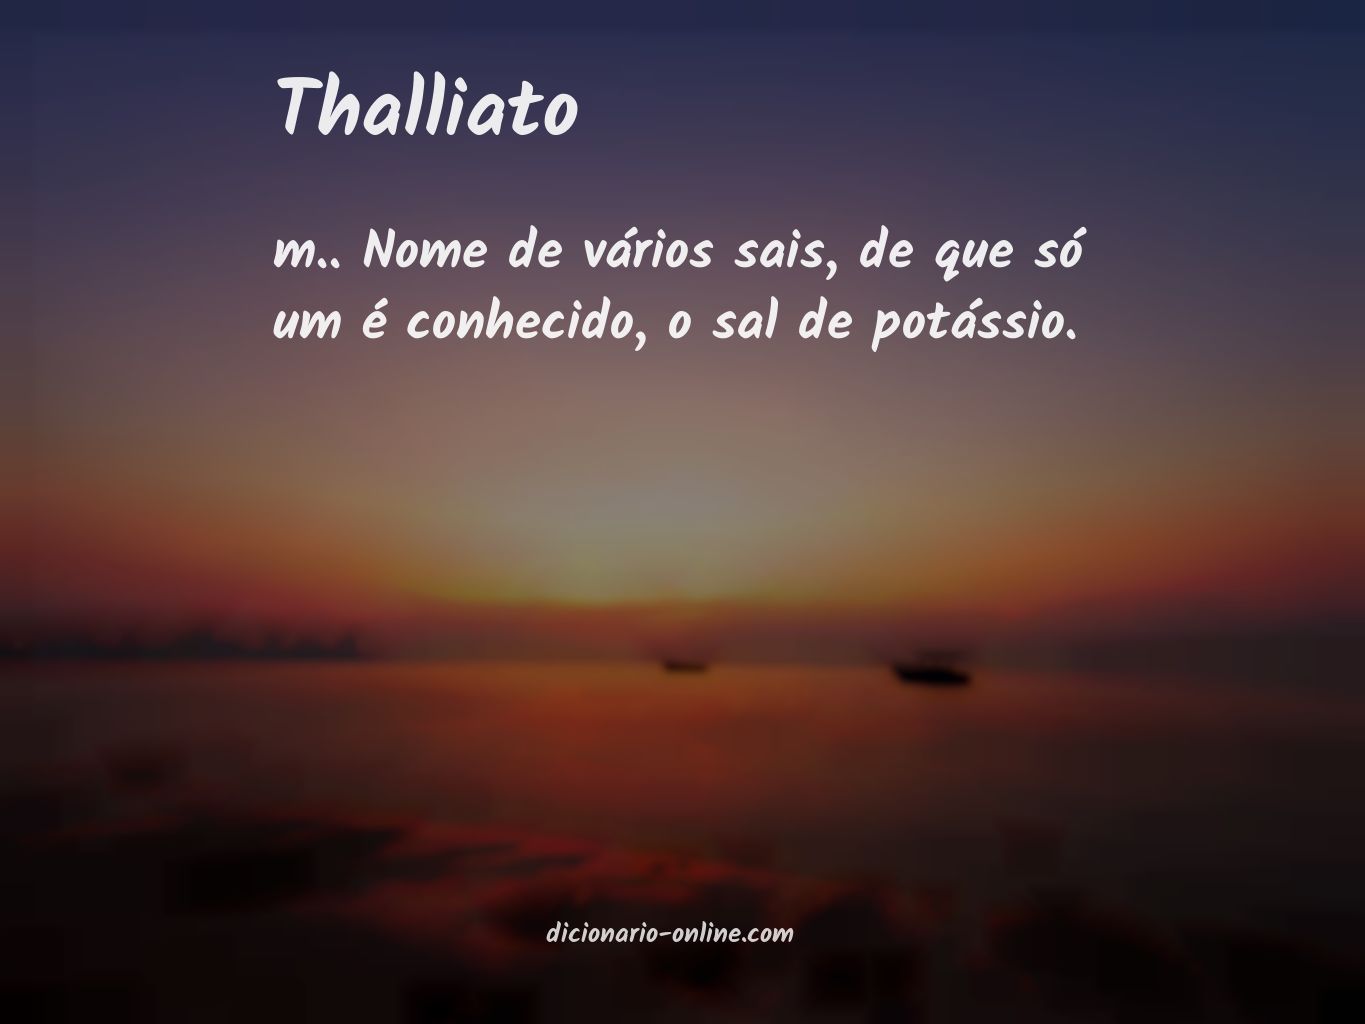 Significado de thalliato